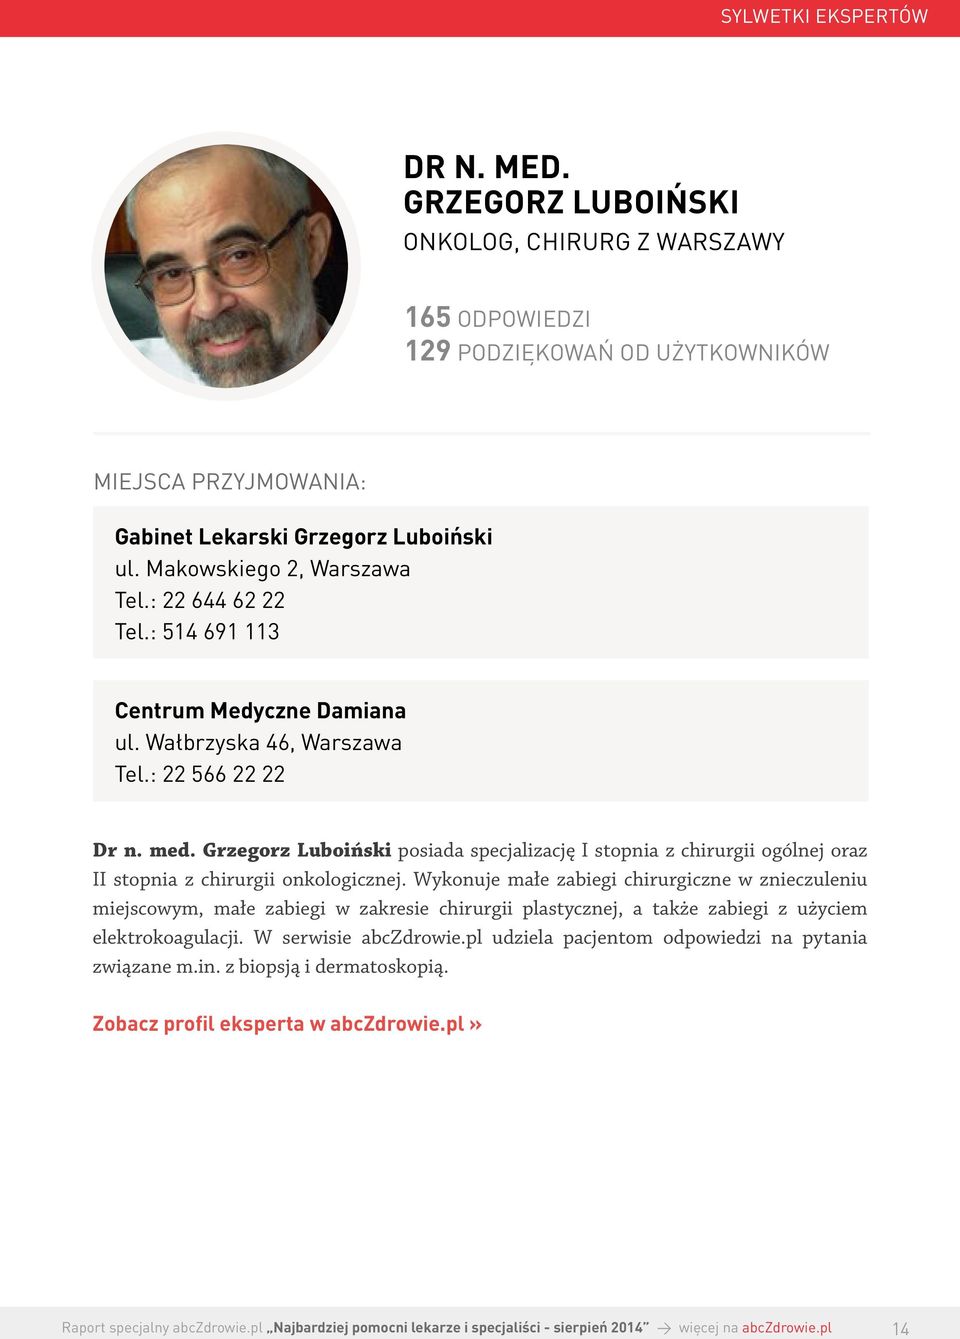 Grzegorz Luboiński posiada specjalizację I stopnia z chirurgii ogólnej oraz II stopnia z chirurgii onkologicznej.